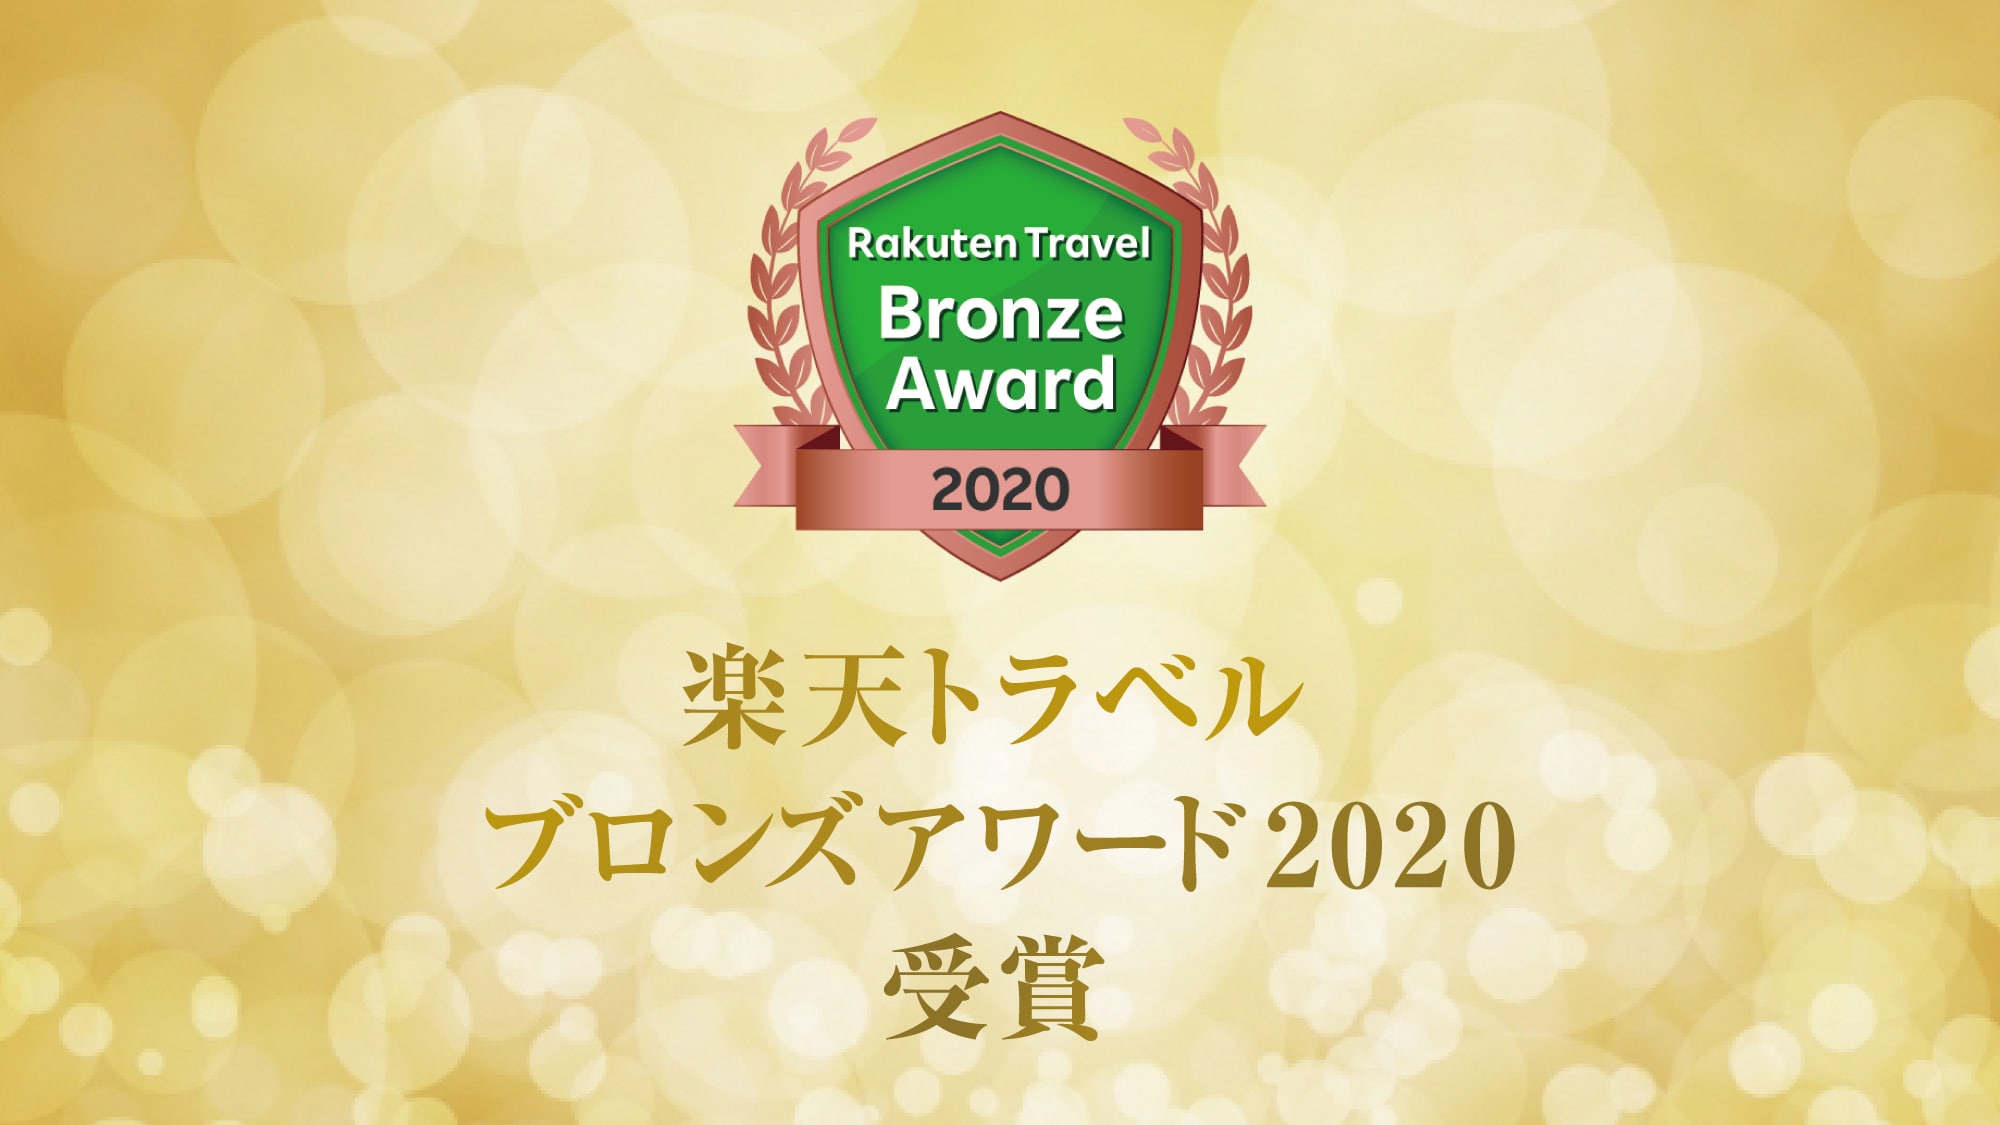 Rakuten Award 2020 Bronze